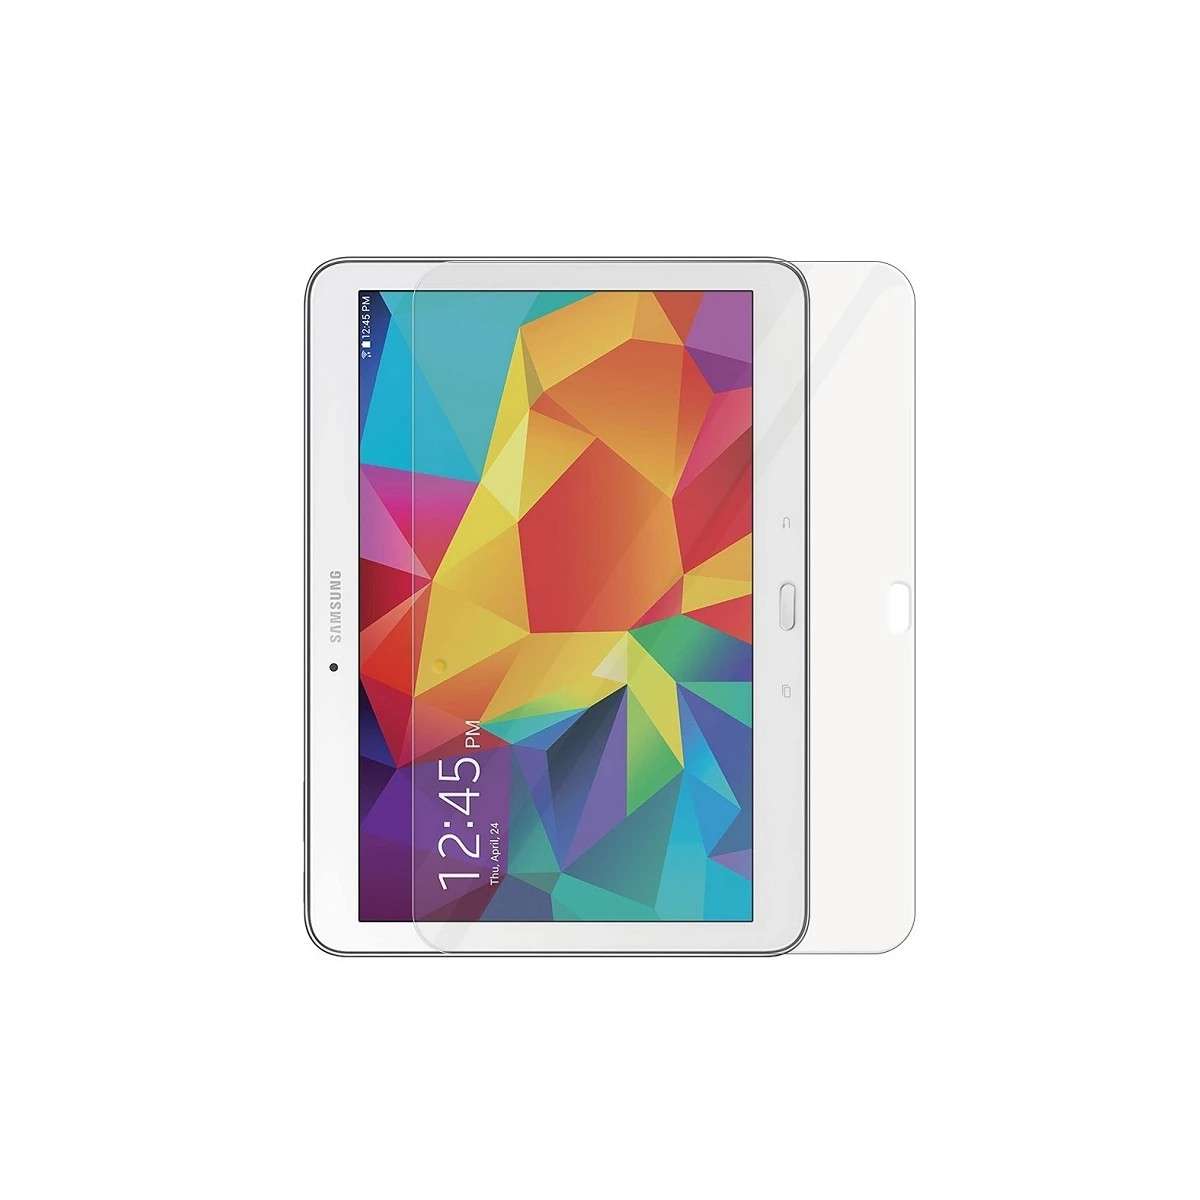 Funda Antigolpe Samsung Galaxy Tab 4 10.1 T530 Silicona Reforzada para  niños, disponible en 5 colores